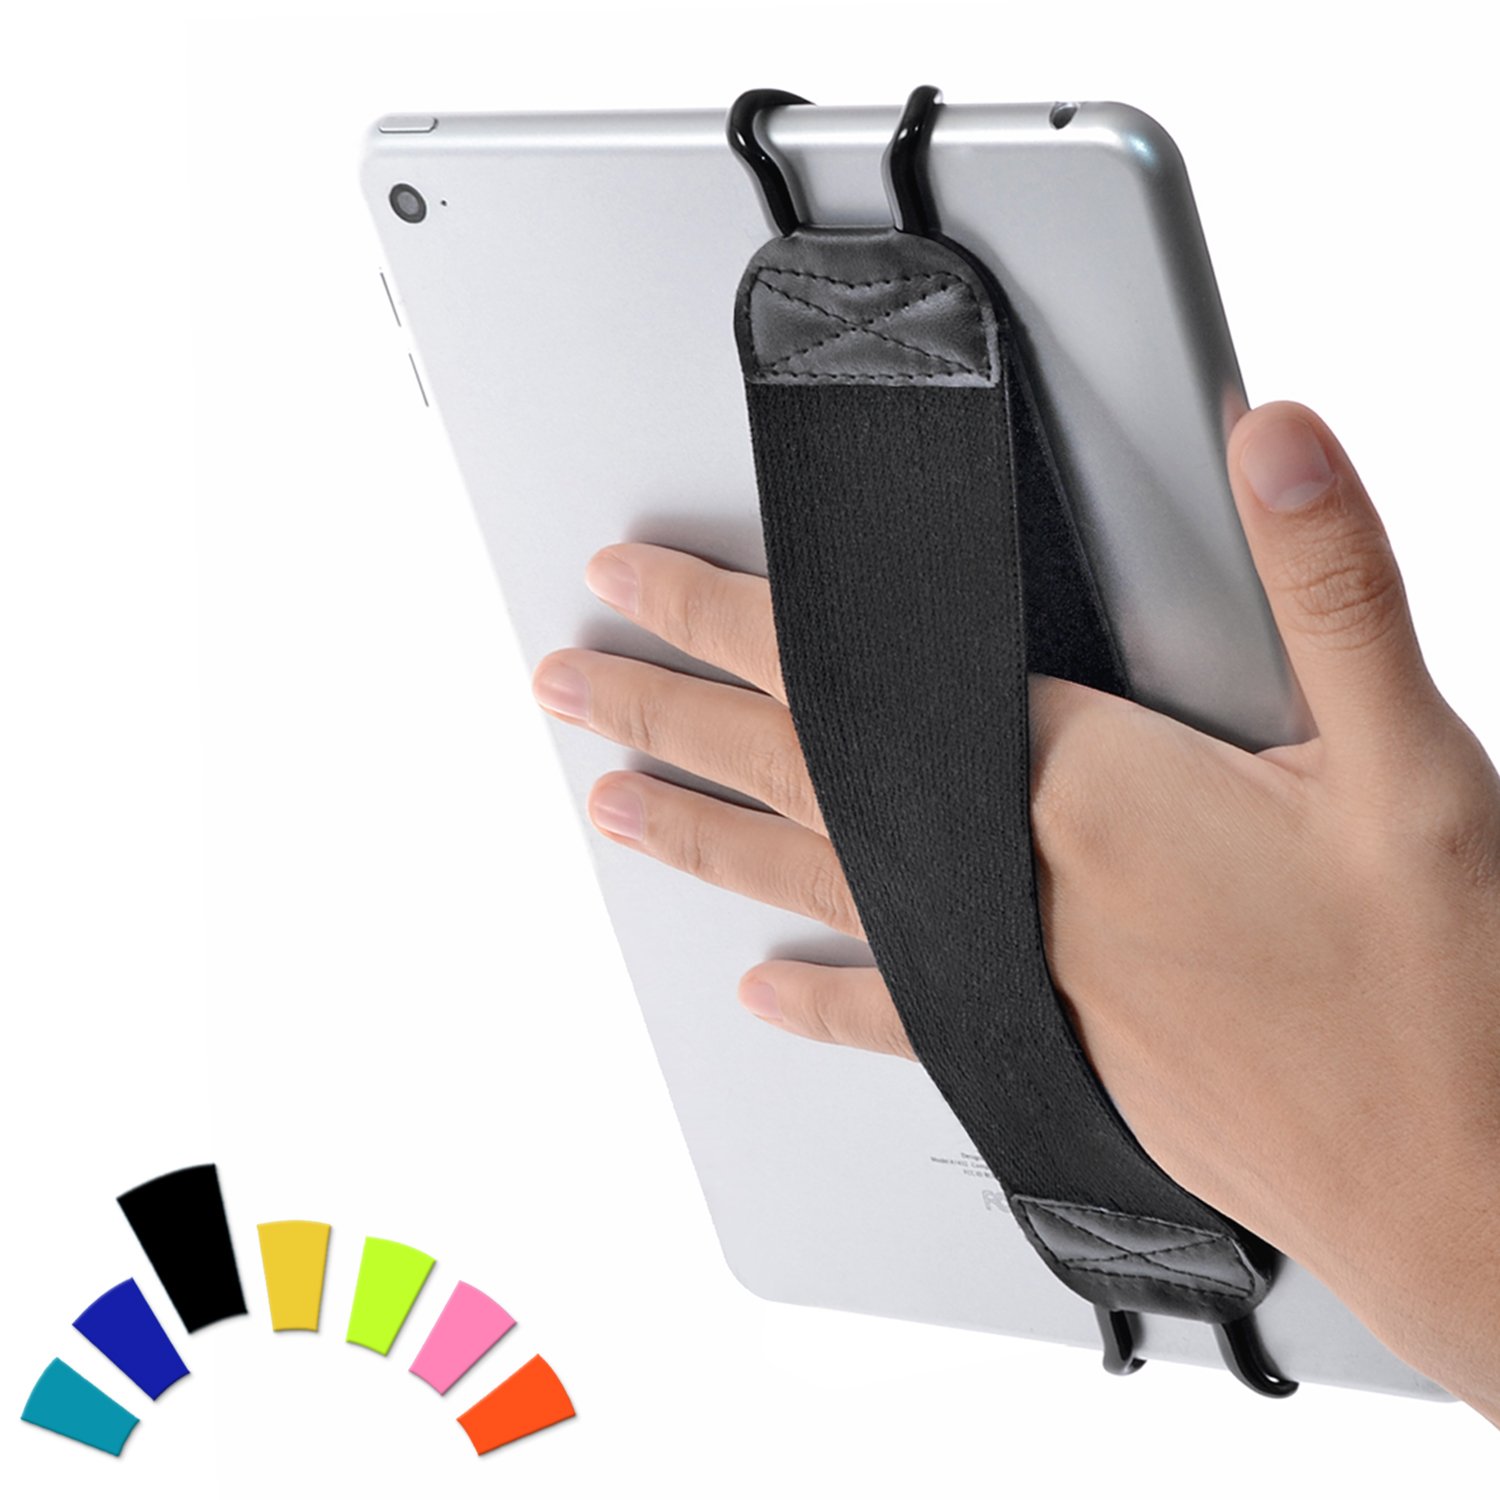 TFY Handschlaufe für Tablets, iPad und E-Reader – Apple iPad, iPad 4 (iPad 2 & 3), iPad Air (iPad Air 2), iPad Mini – iPad Pro 9,7 Zoll – Samsung Galaxy Tab – Google Nexus und mehr